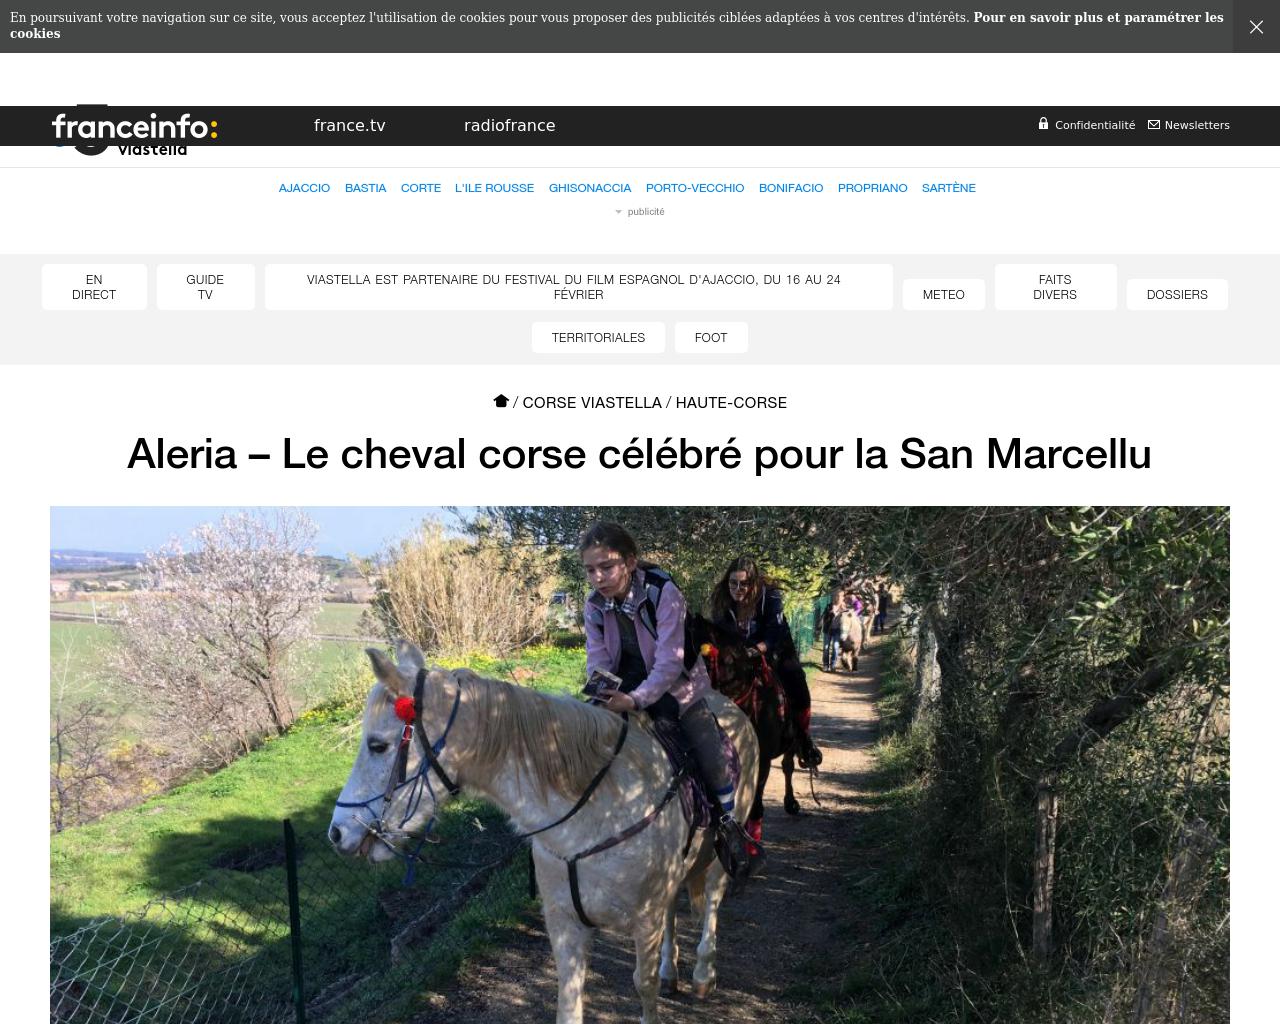 28/01/2018 : Le cheval corse célébré pour la San Marcellu